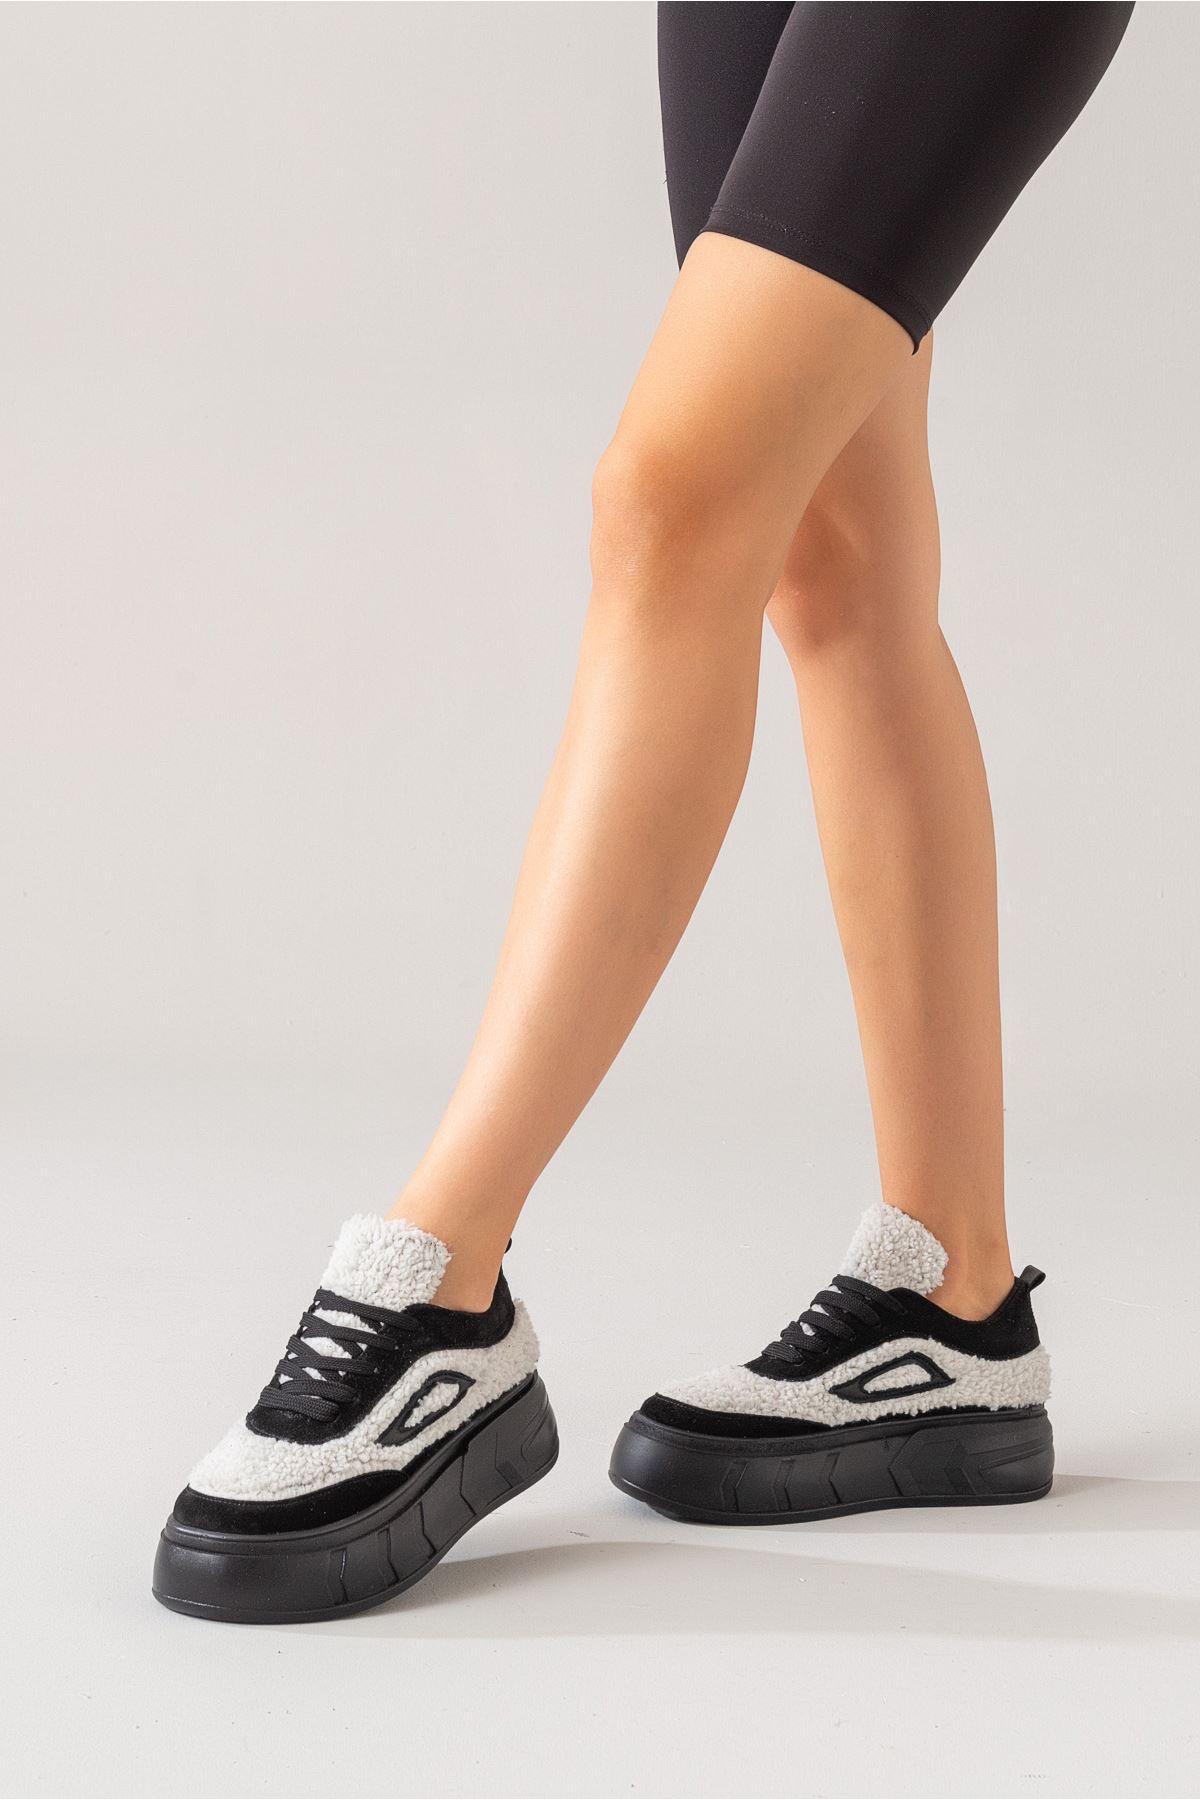 Alego Kadın Deri Spor Ayakkabı Siyah Süet-Beyaz Kürk 